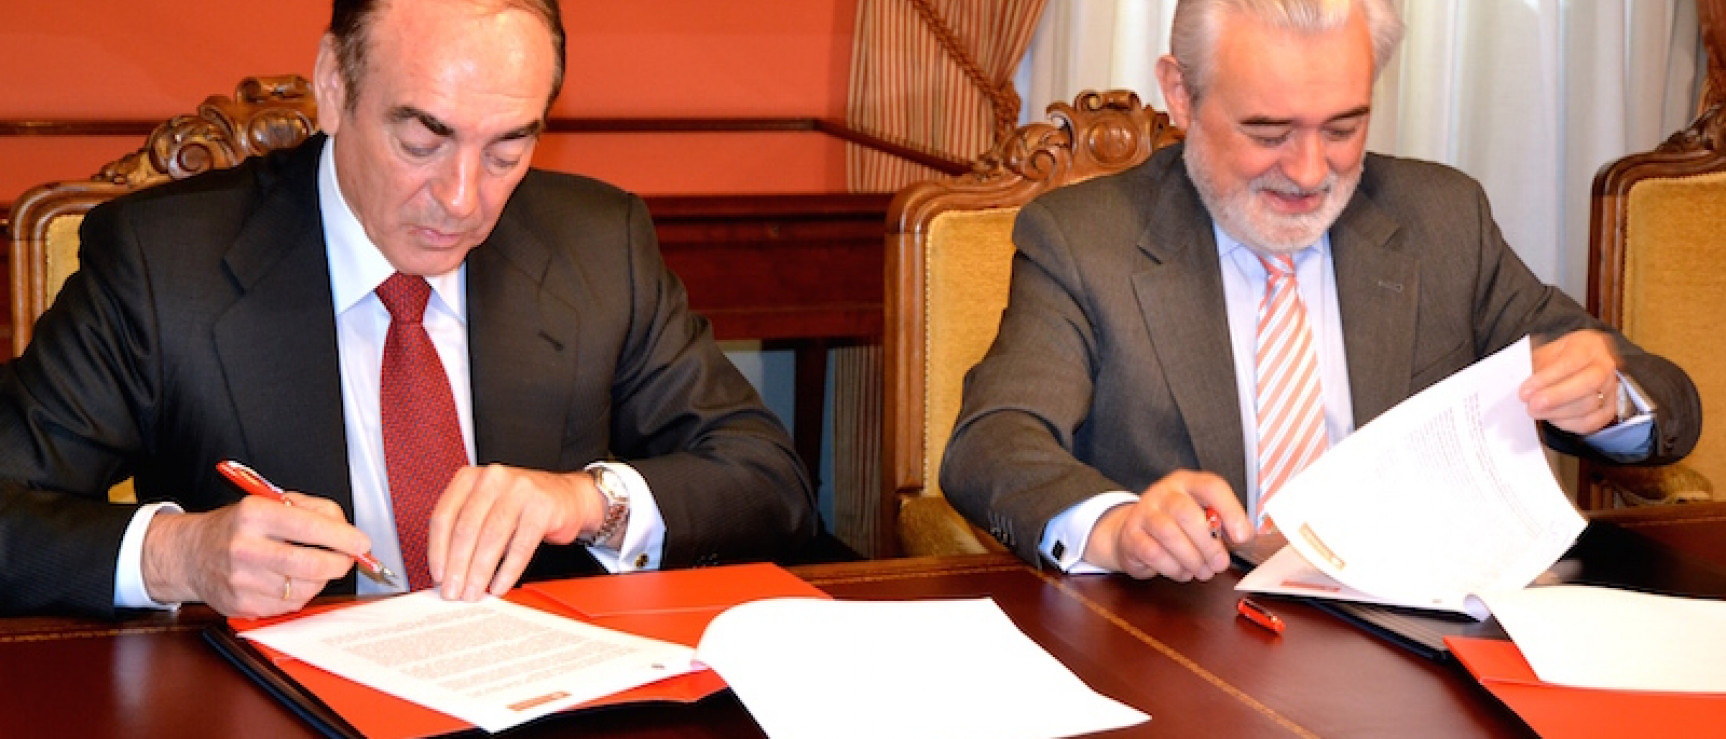 José Antonio Villasante y Darío Villanueva, firmantes del acuerdo.